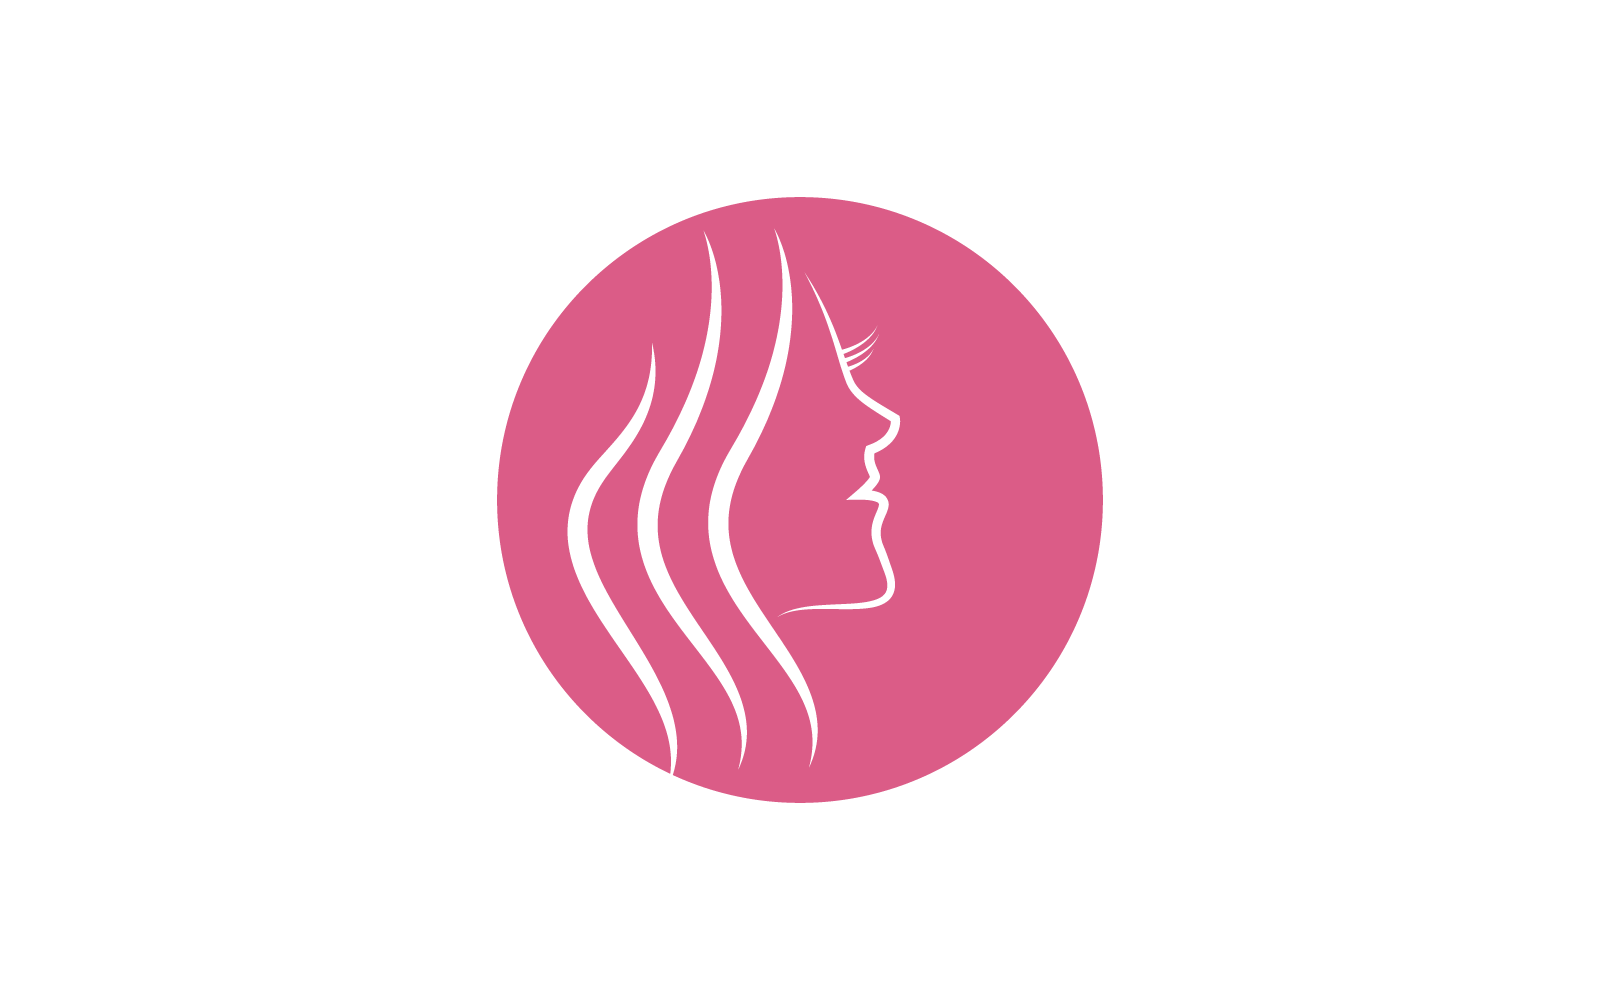 Beauty Woman Face Logo Vector Template Templatemonster